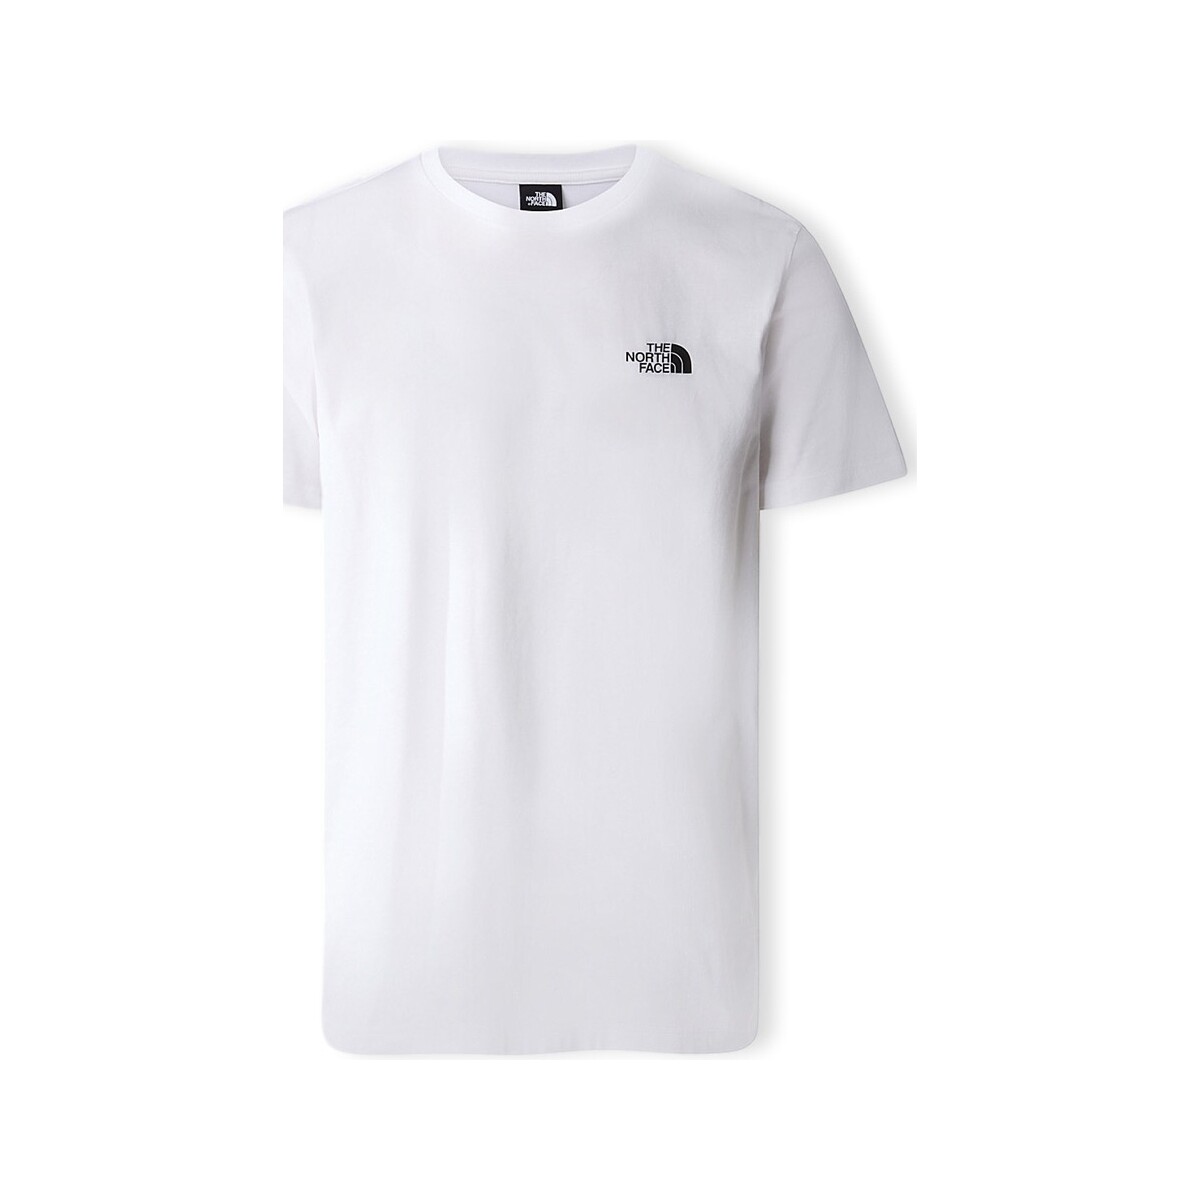 Ruhák Férfi Pólók / Galléros Pólók The North Face Simple Dome T-Shirt - White Fehér